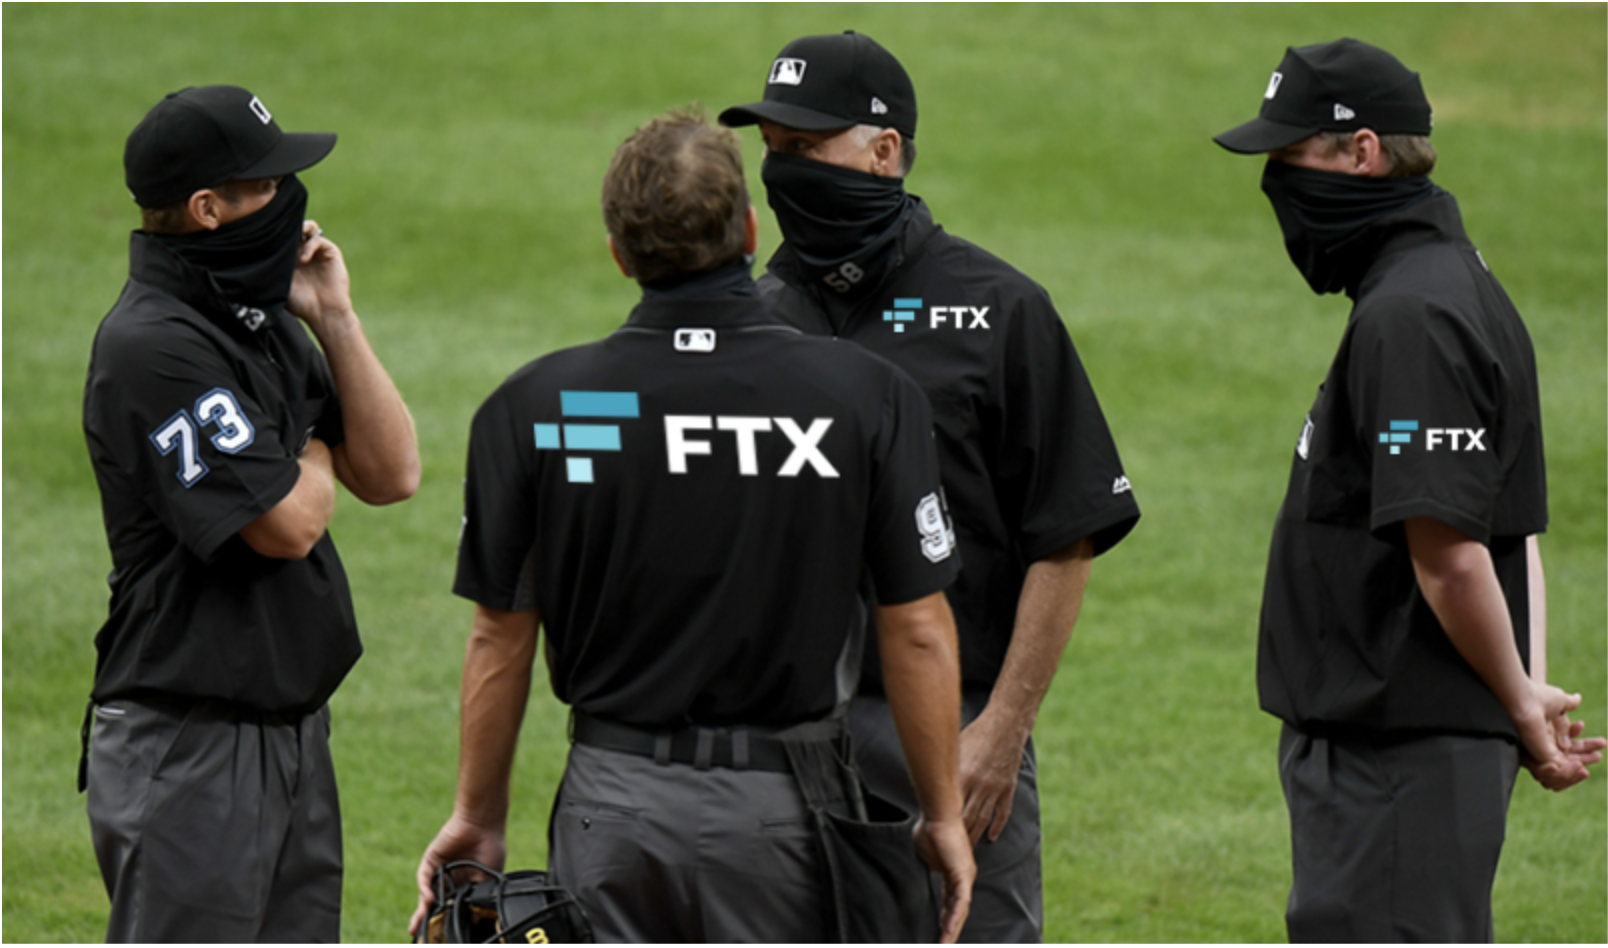 ftx on umpire gear